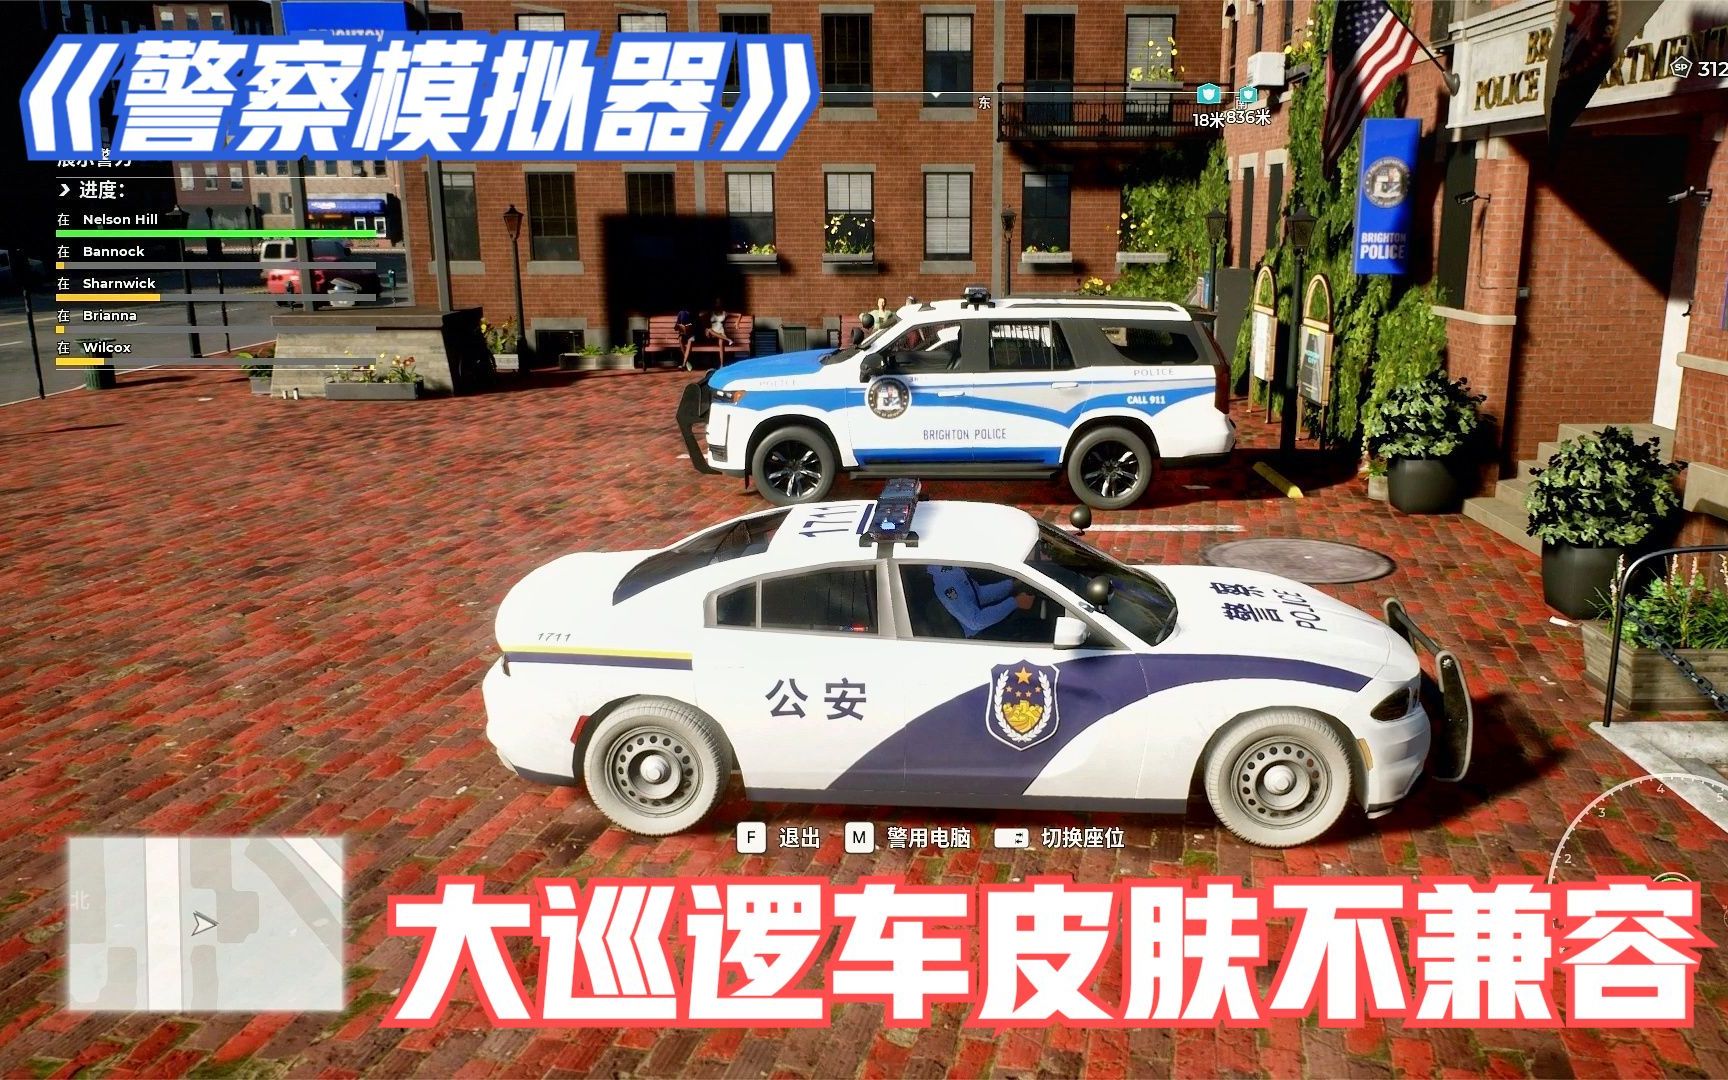 【警察模拟器:巡警 】开警车满街溜达,换皮肤大警车却不兼容